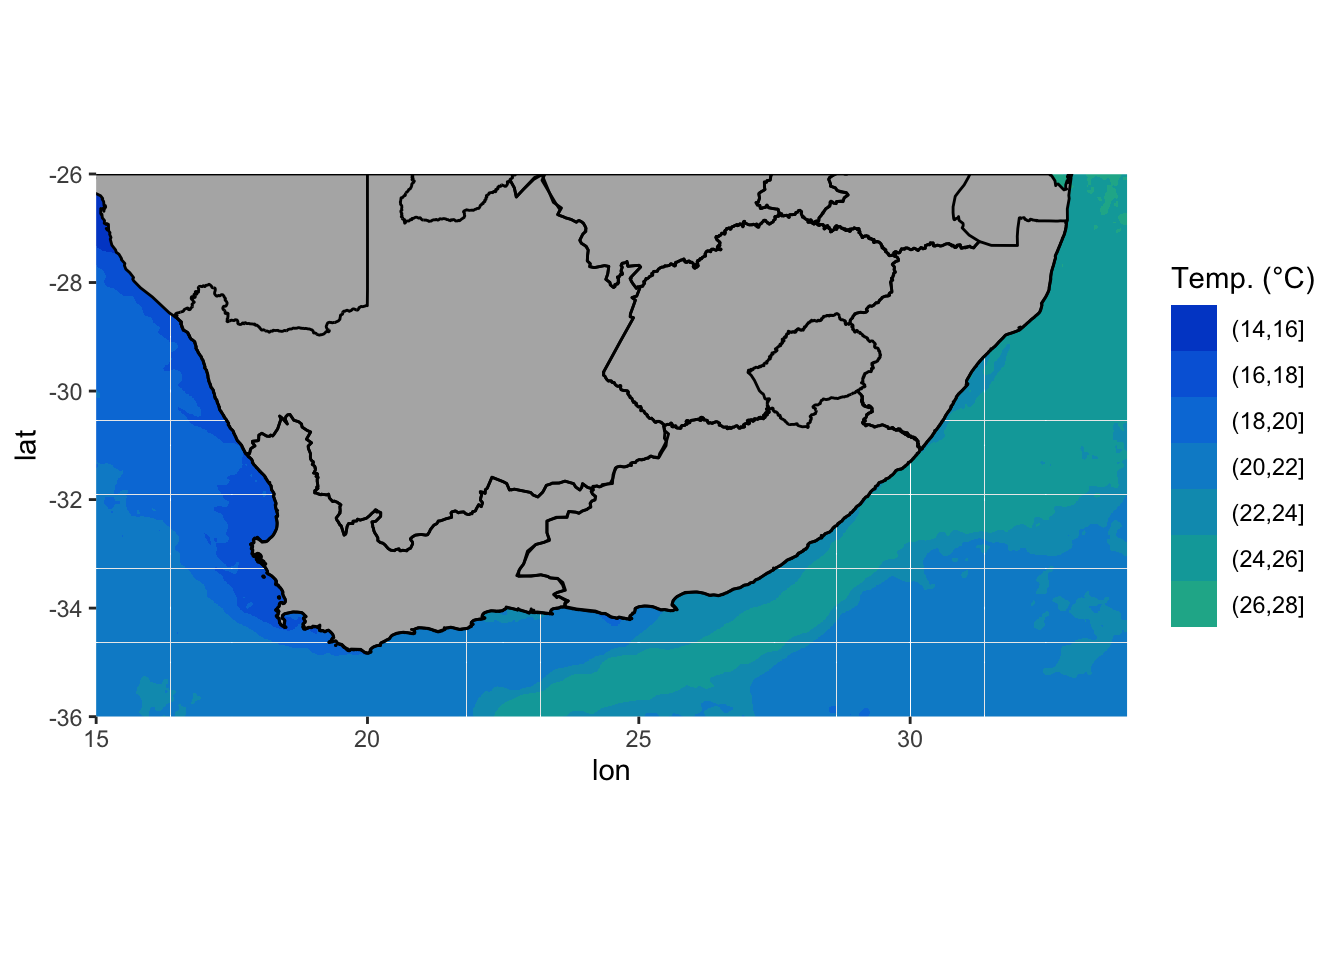 Ocean temperatures (°C) around South Africa.